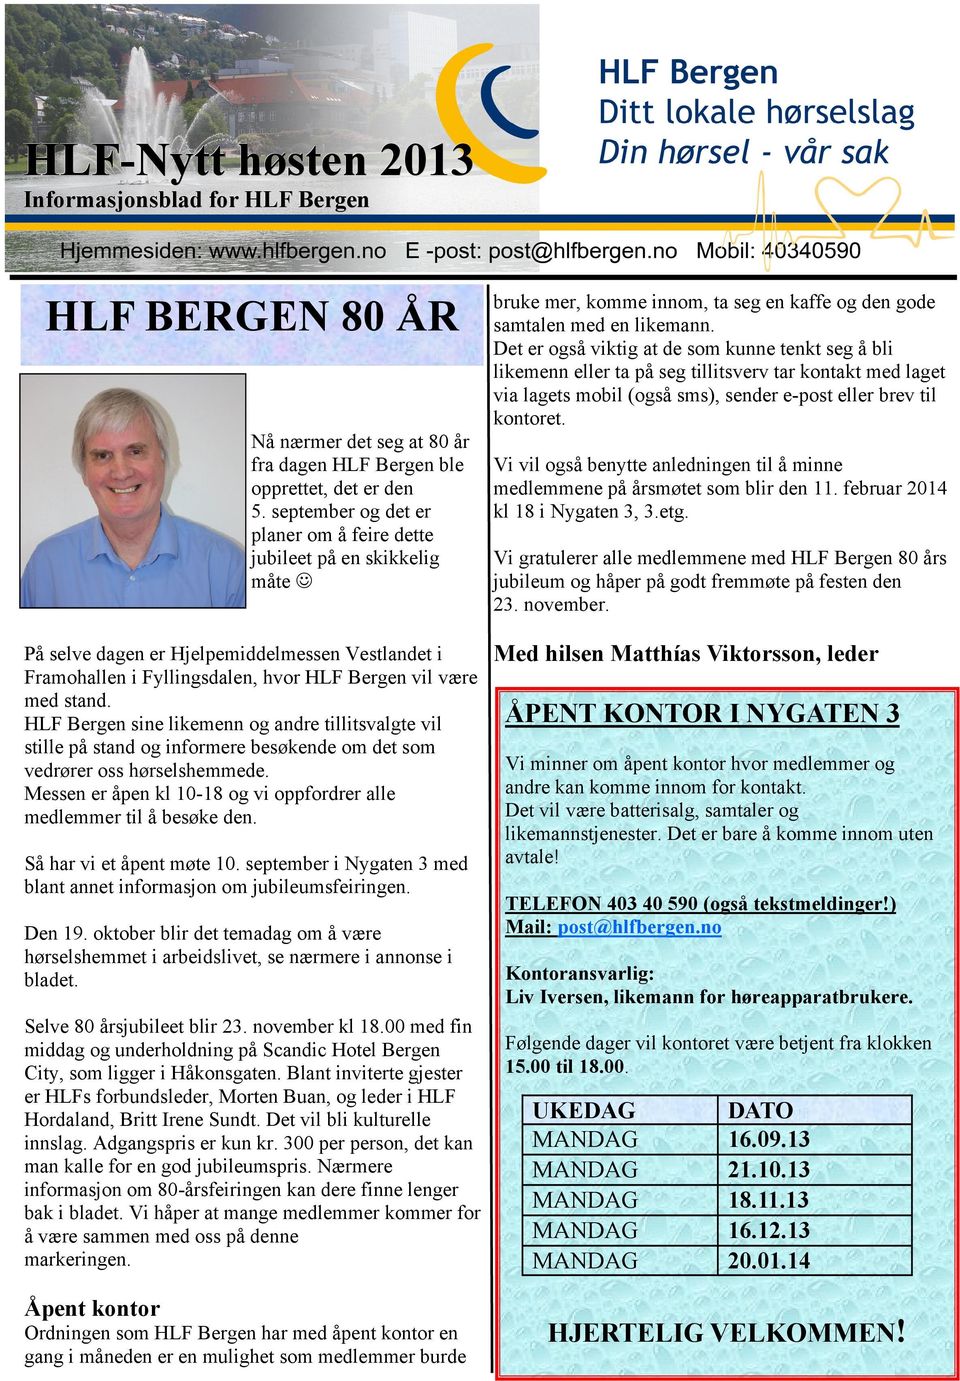 HLF Bergen sine likemenn og andre tillitsvalgte vil stille på stand og informere besøkende om det som vedrører oss hørselshemmede.